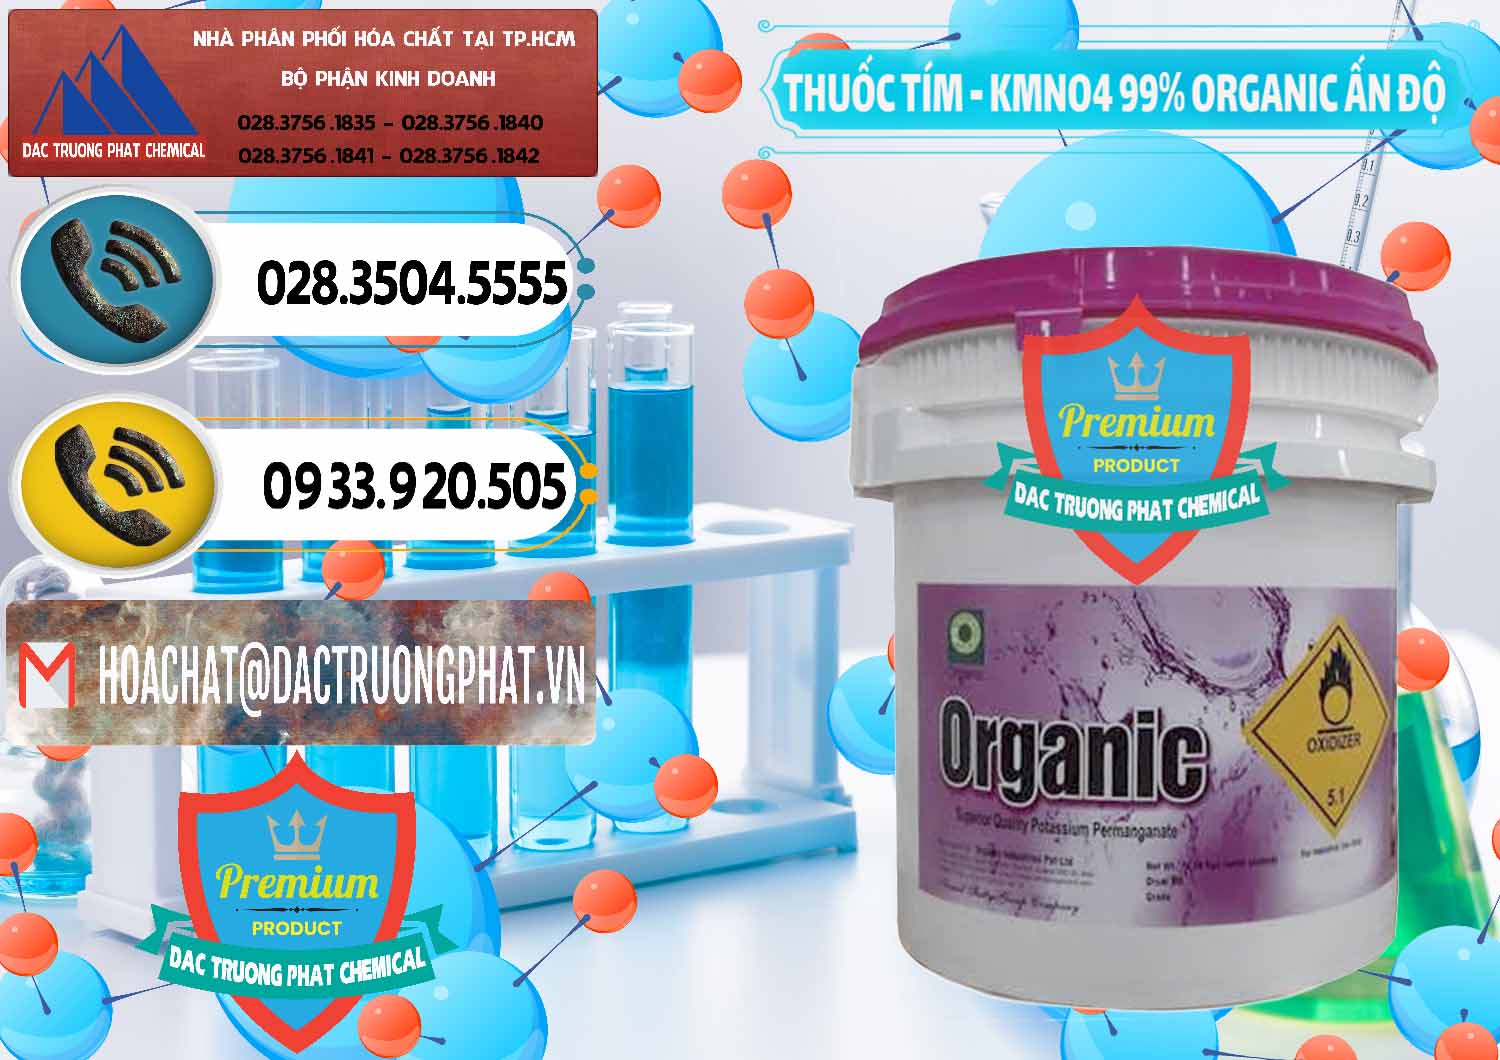 Nơi kinh doanh - bán Thuốc Tím - KMNO4 99% Organic Ấn Độ India - 0216 - Cty chuyên nhập khẩu & cung cấp hóa chất tại TP.HCM - hoachatdetnhuom.vn